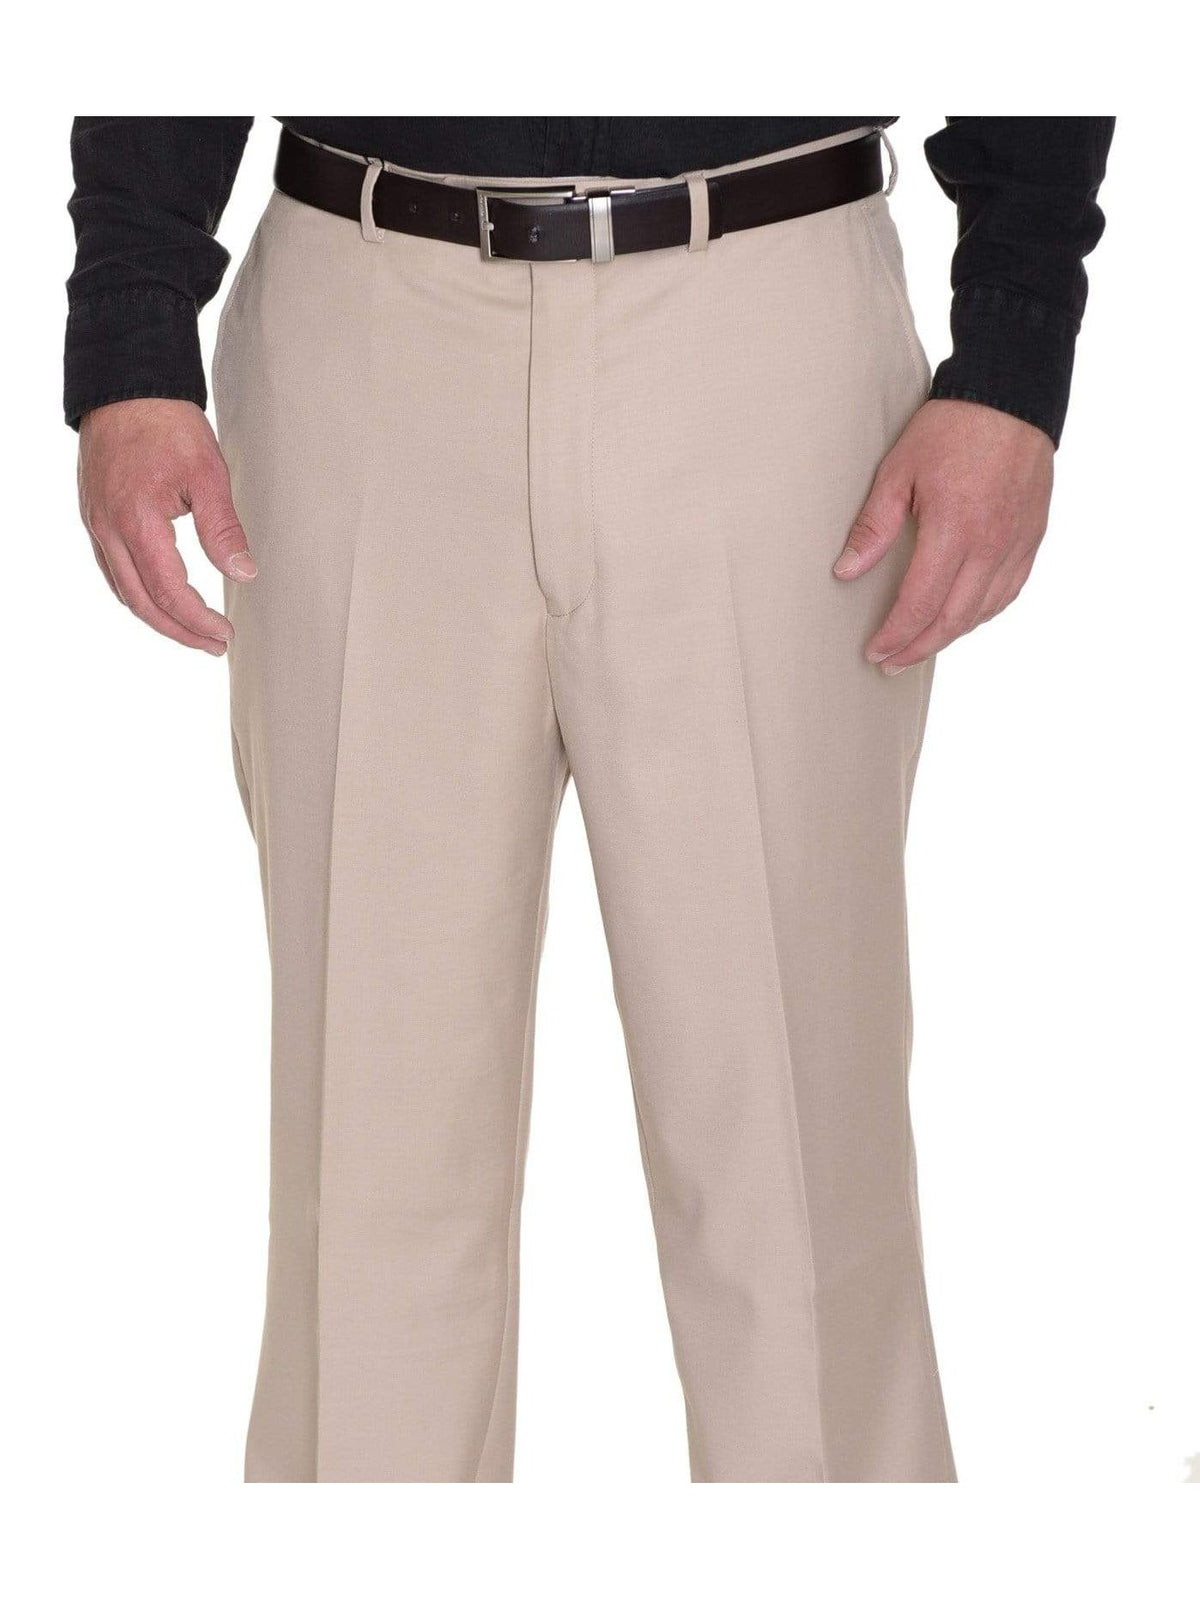 Raphael Solid Tan Flat Front Dress Pants - The Suit Depot